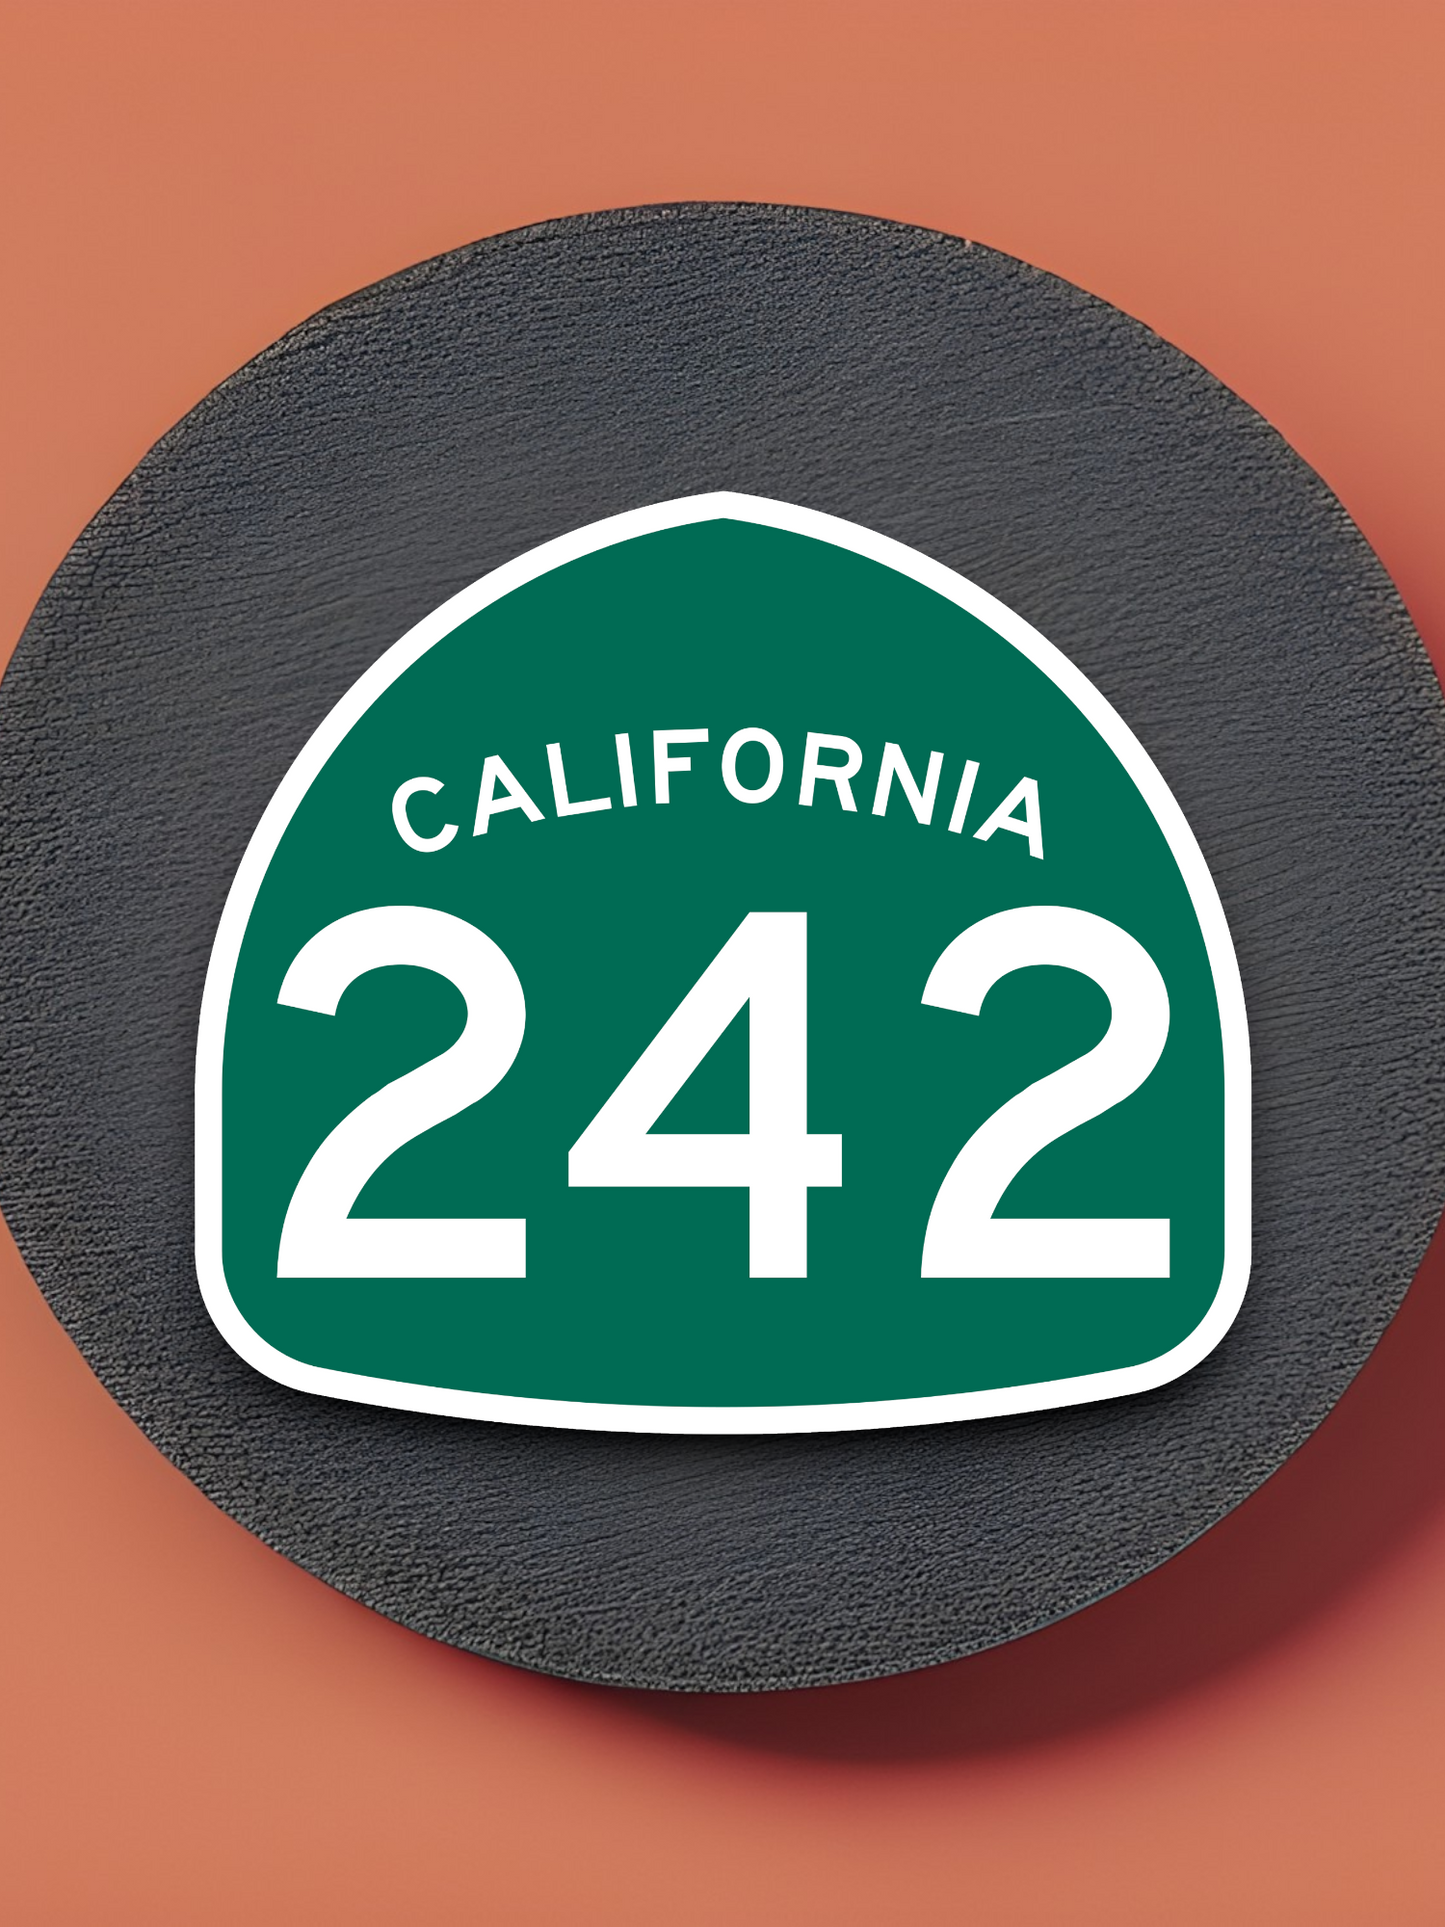 California State Route 242 Sticker